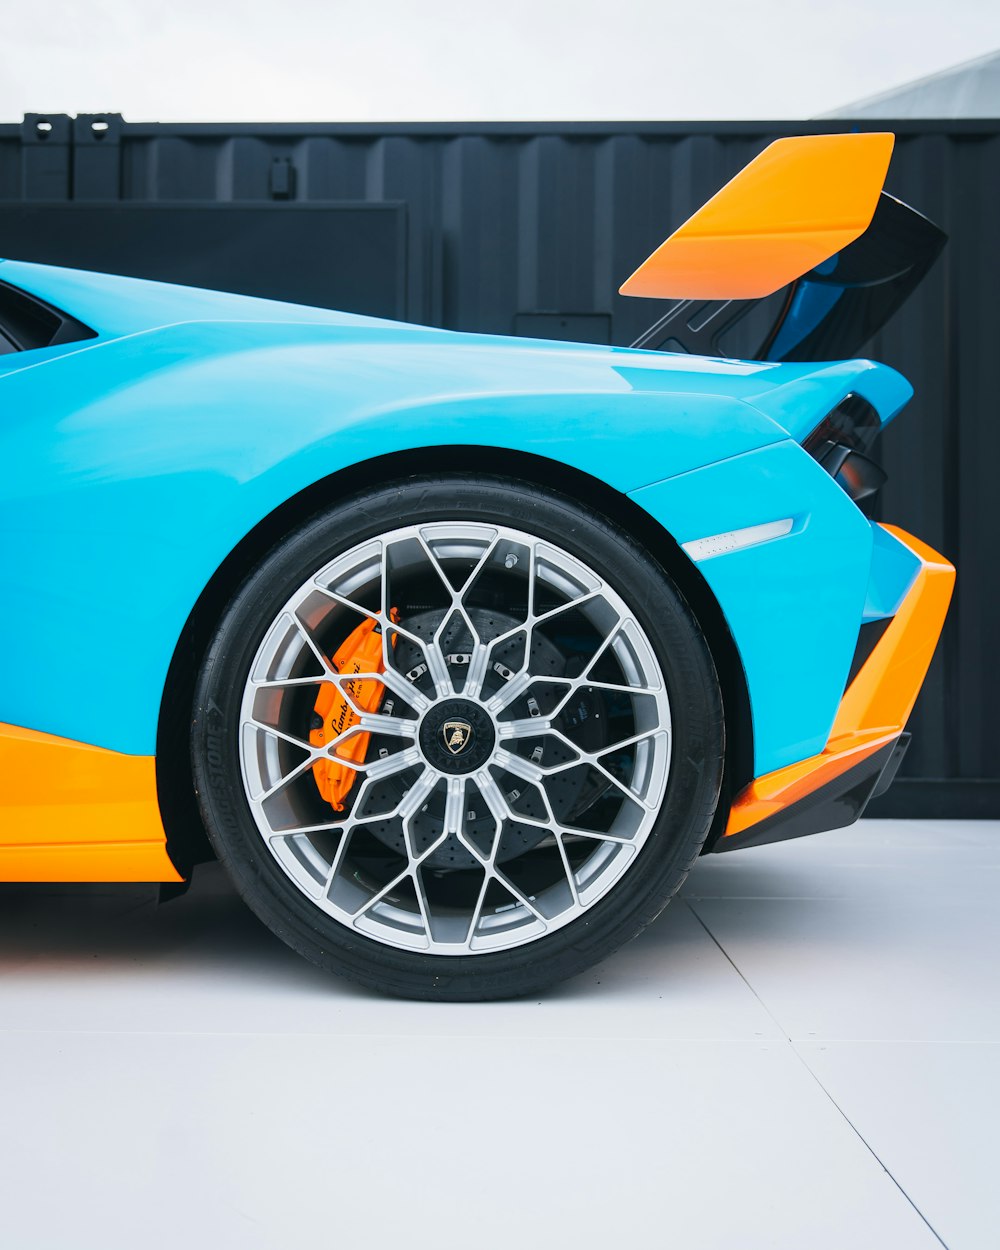 Ein blau-oranger Sportwagen, der in einer Garage geparkt ist